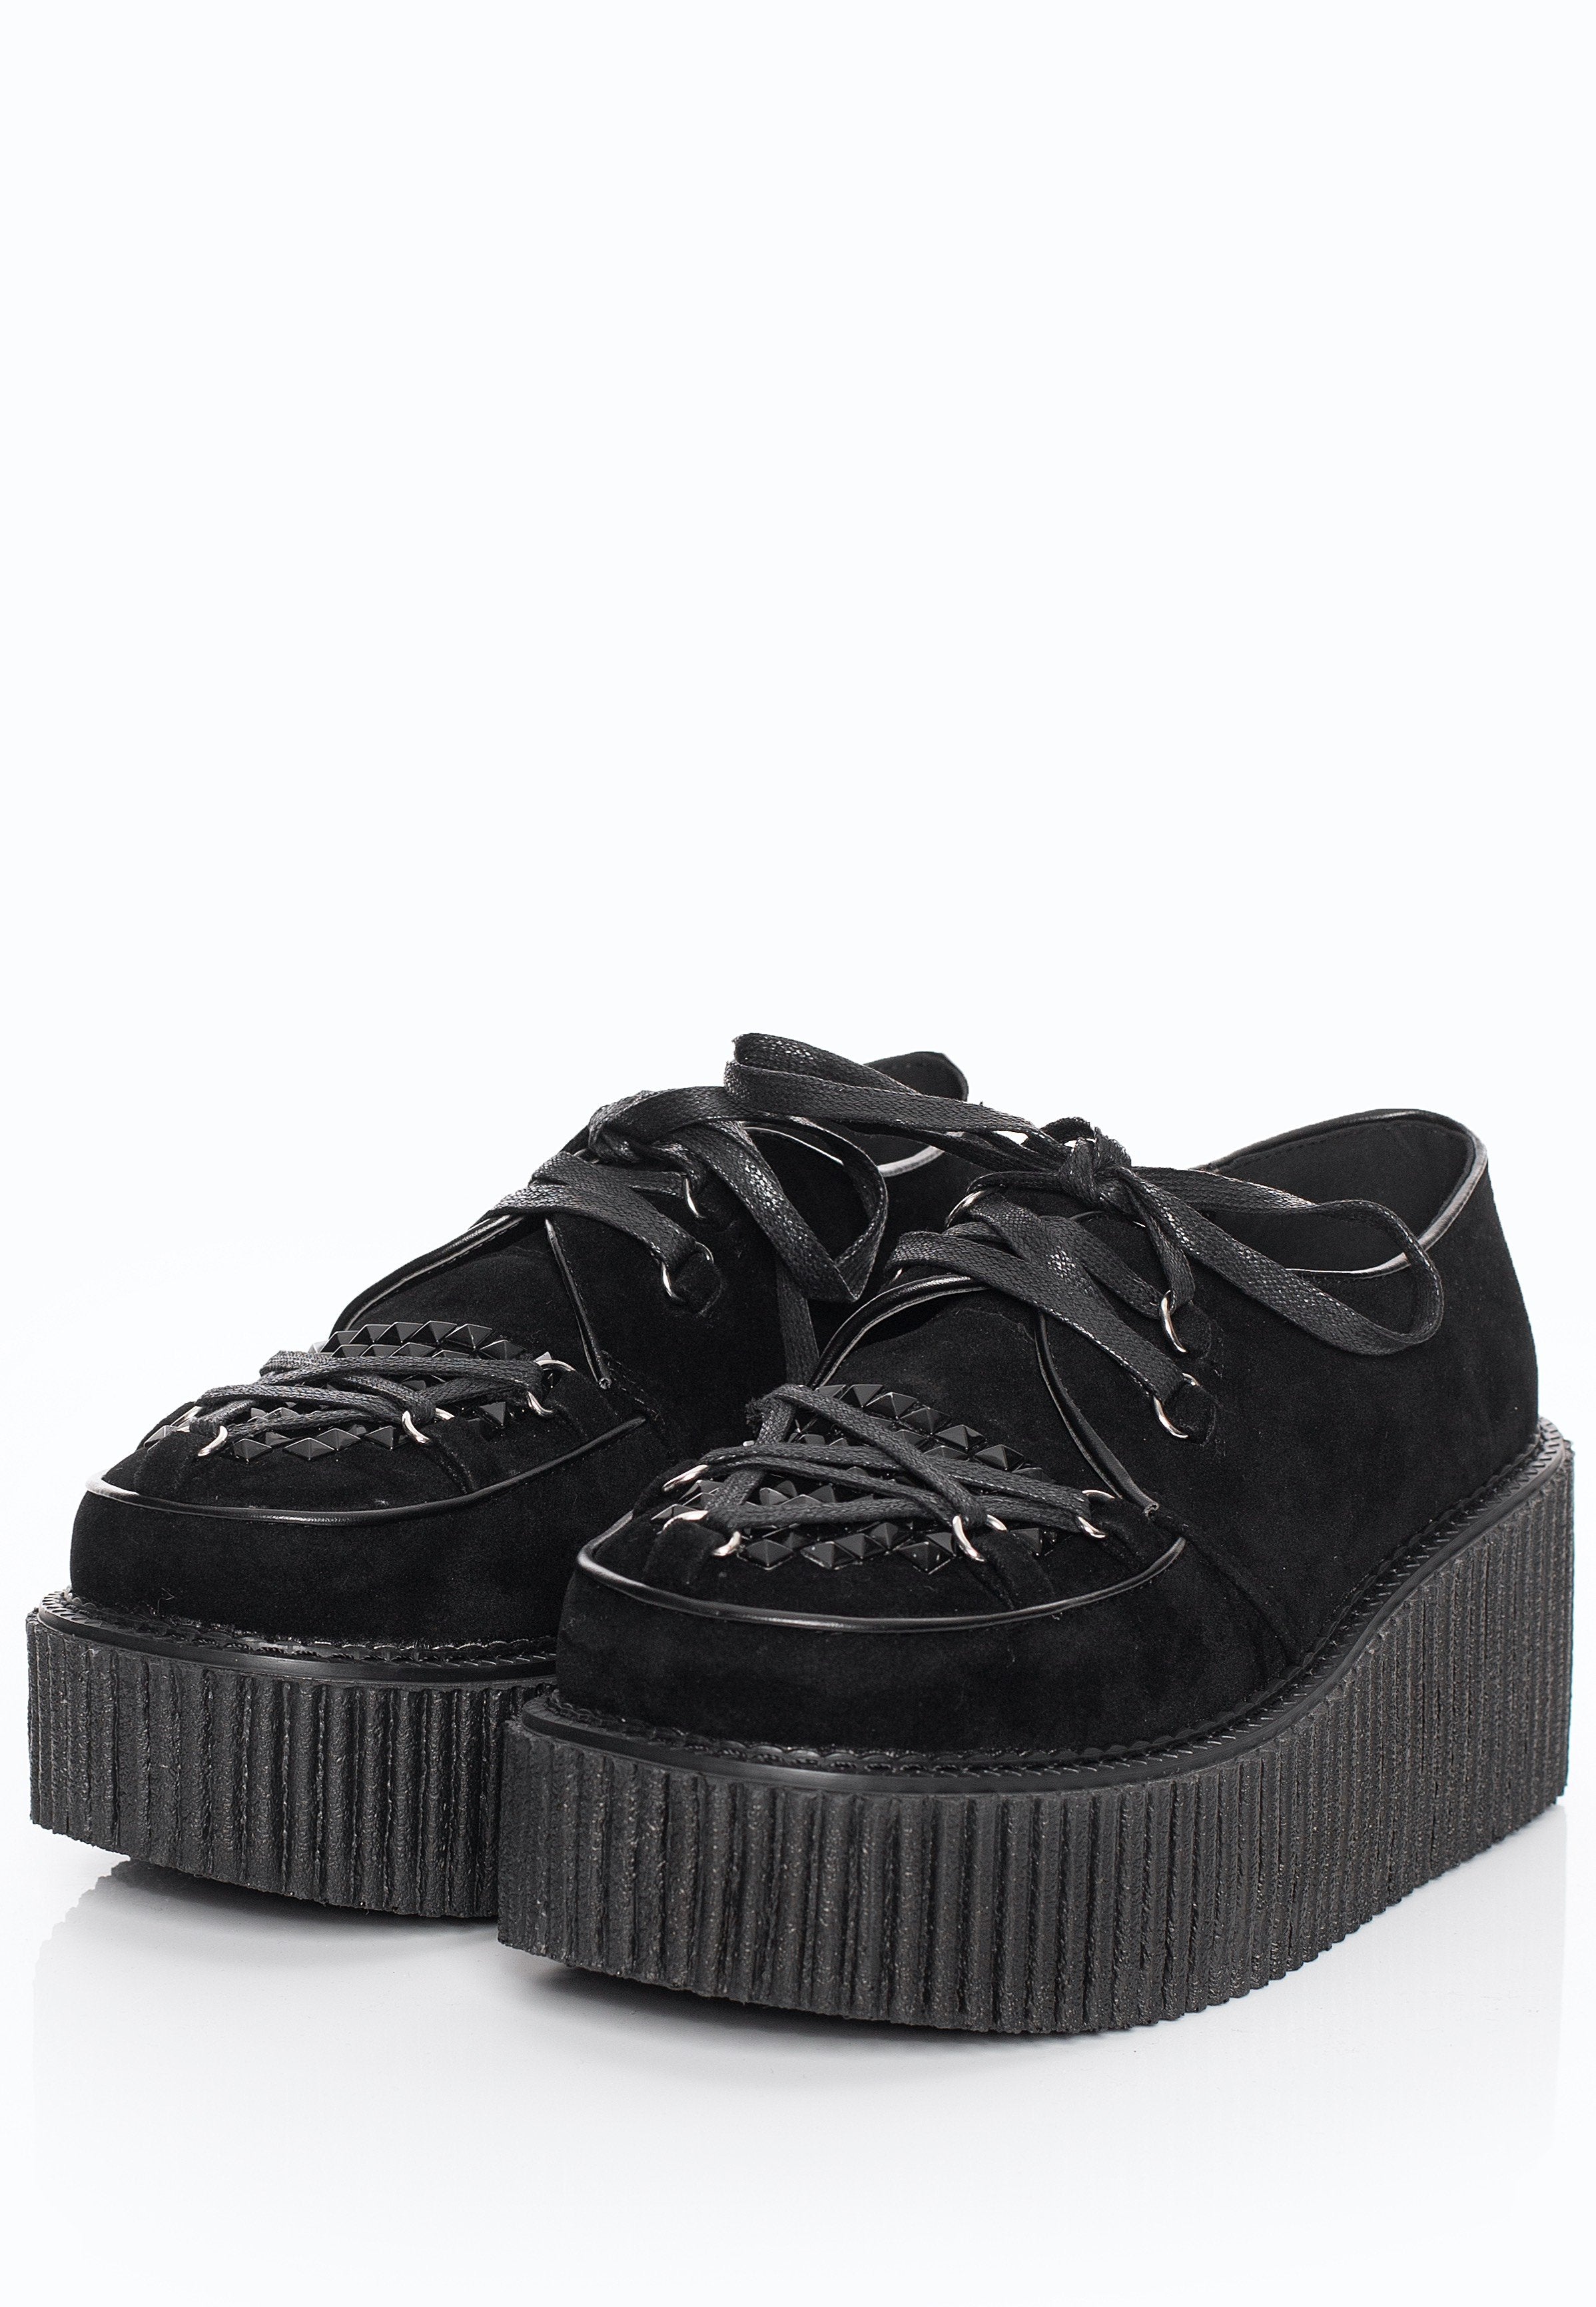 DemoniaCult - Creeper 2016 Black Vegan Suede - Girl Shoes